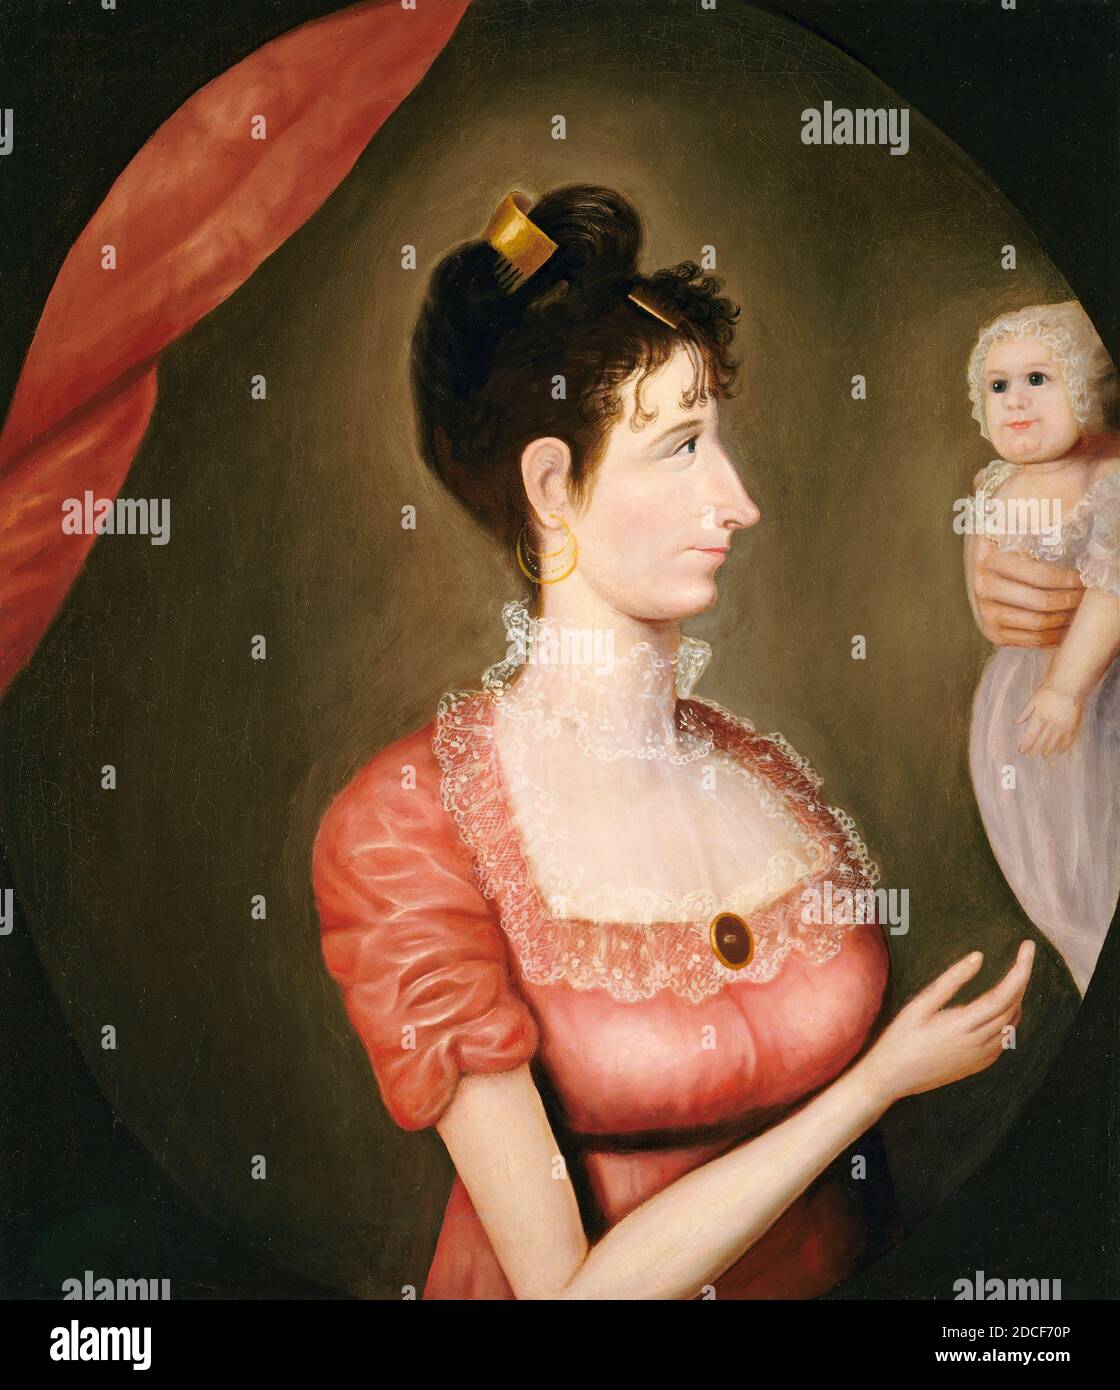 Américain XIXe siècle, (artiste), la fière mère, c. 1810, huile sur toile, hors tout : 76.3 x 66.5 cm (30 1/16 x 26 3/16 in.), encadré : 92.1 x 82.5 x 9.5 cm (36 1/4 x 32 1/2 x 3 3/4 in Banque D'Images